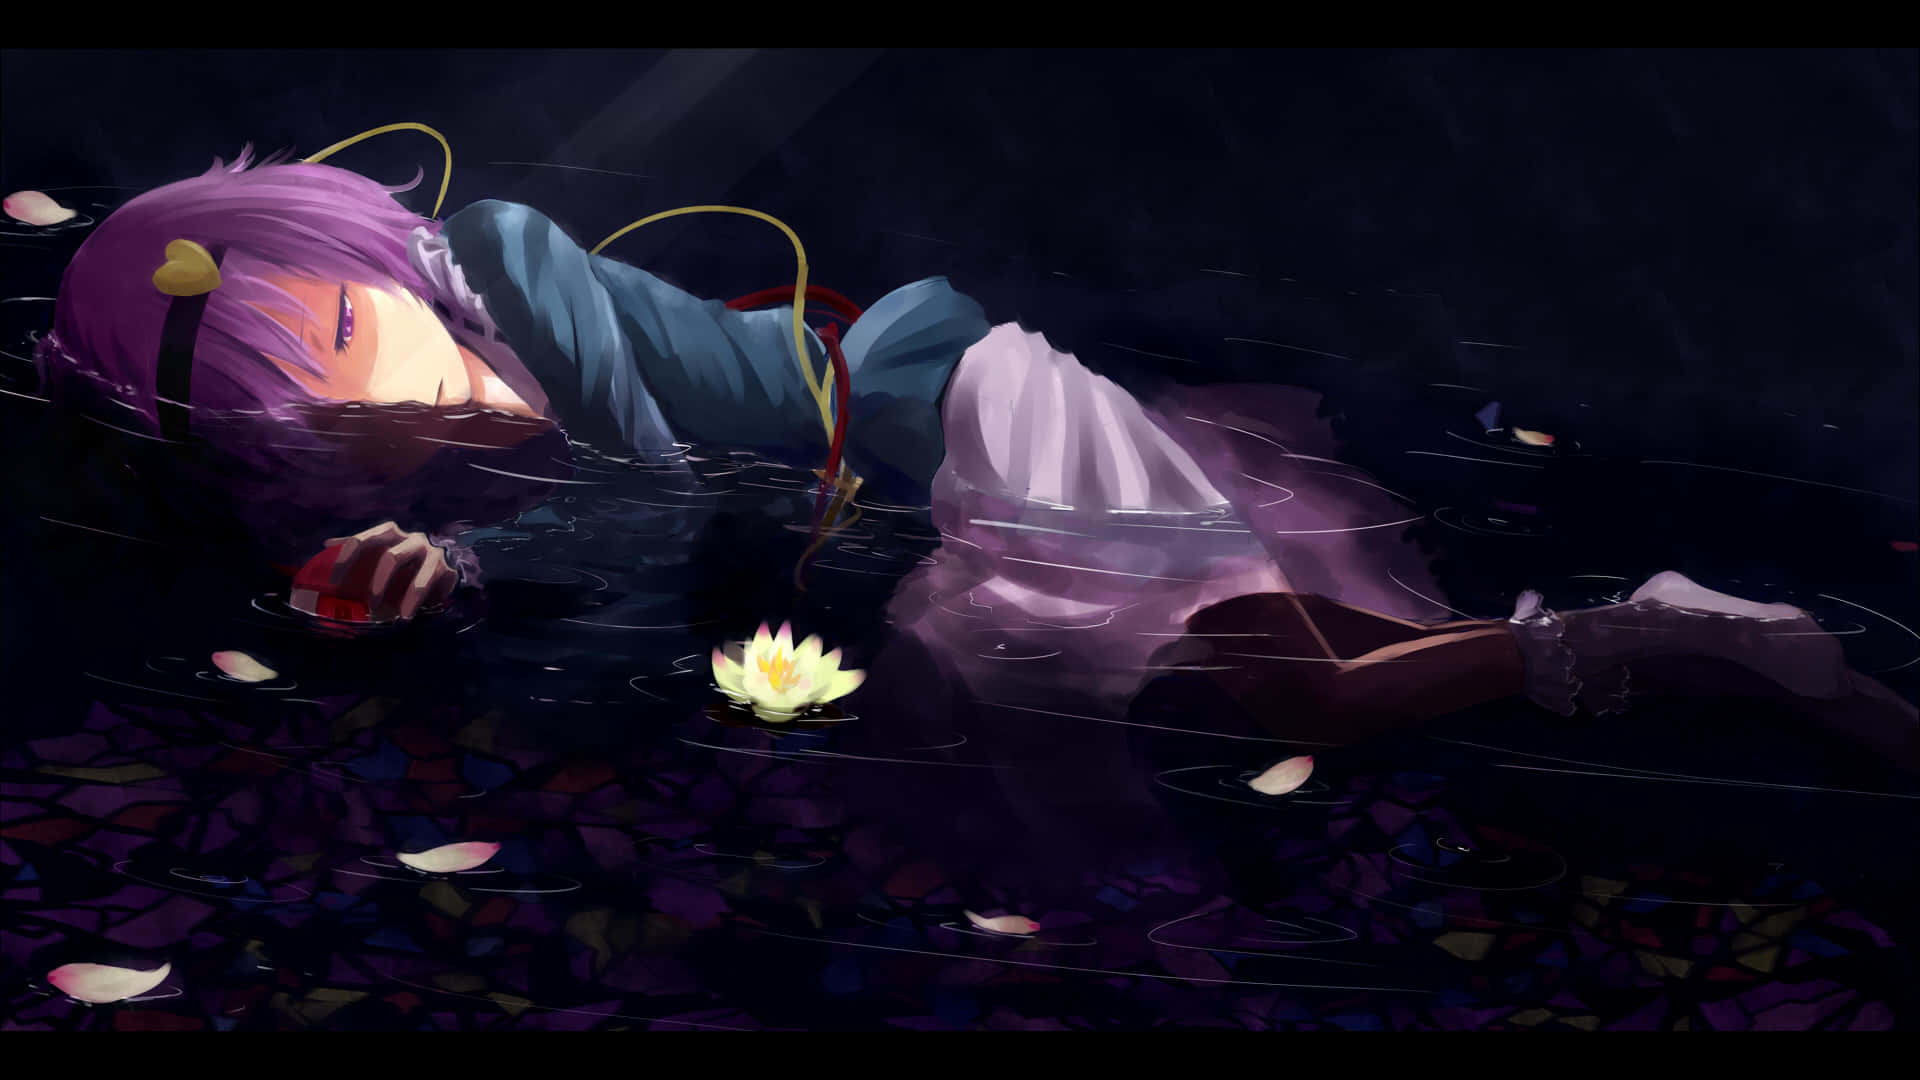 Smerte og sorg føles nøjagtigt gennem et trist grædende anime-karakter Wallpaper